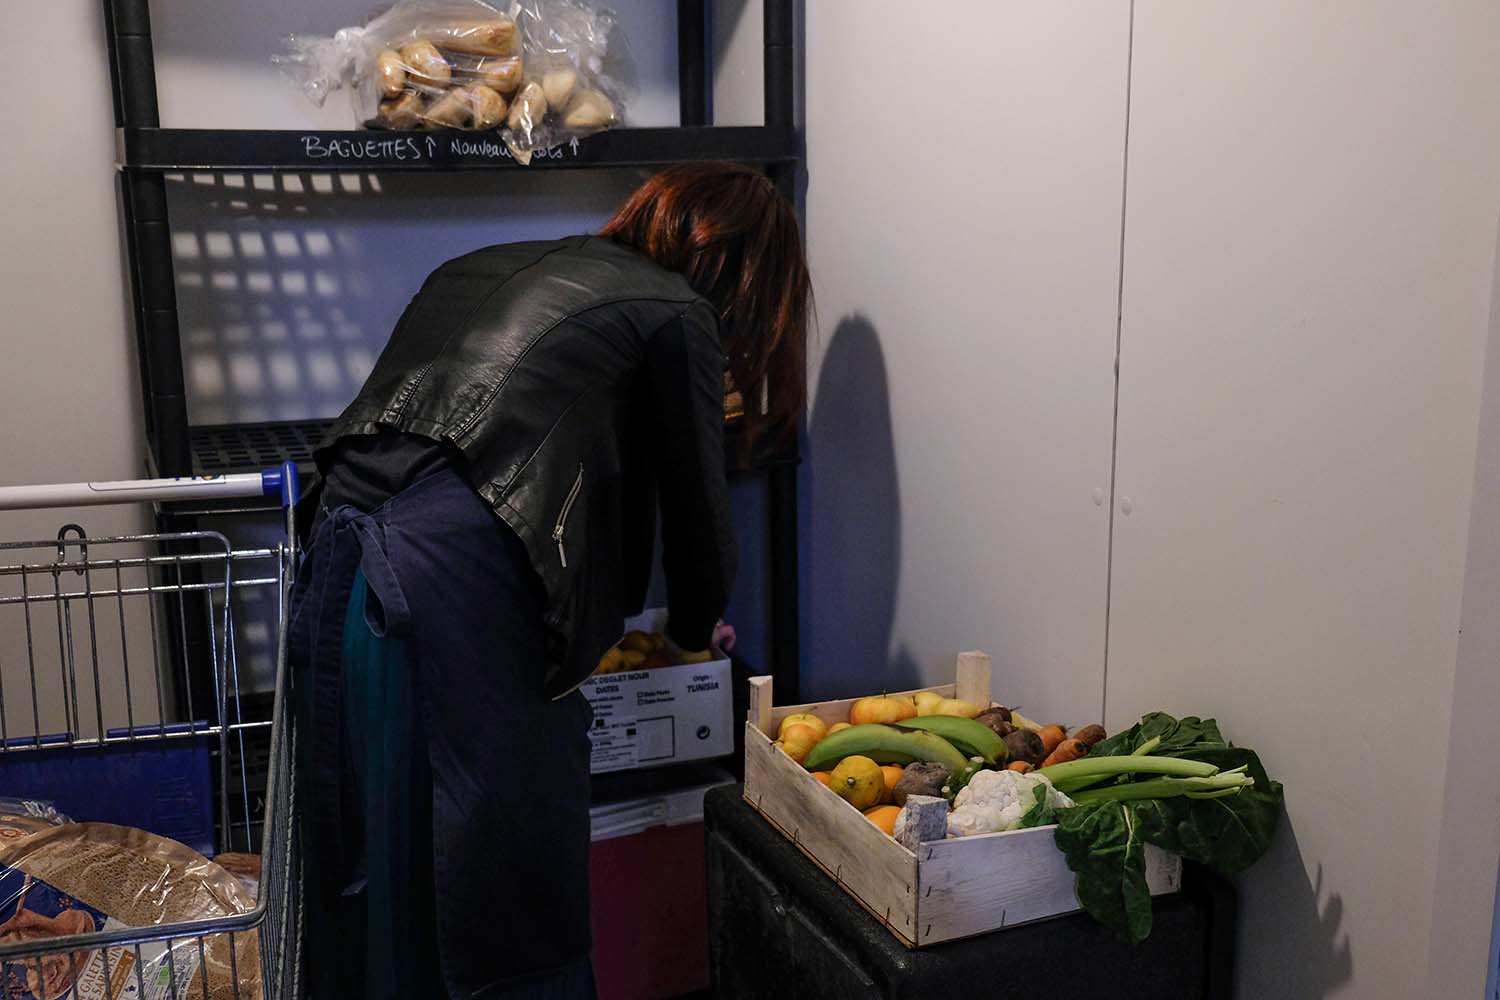 Laurie sort un premier panier composé exclusivement de fruits et légumes © Globe Reporters